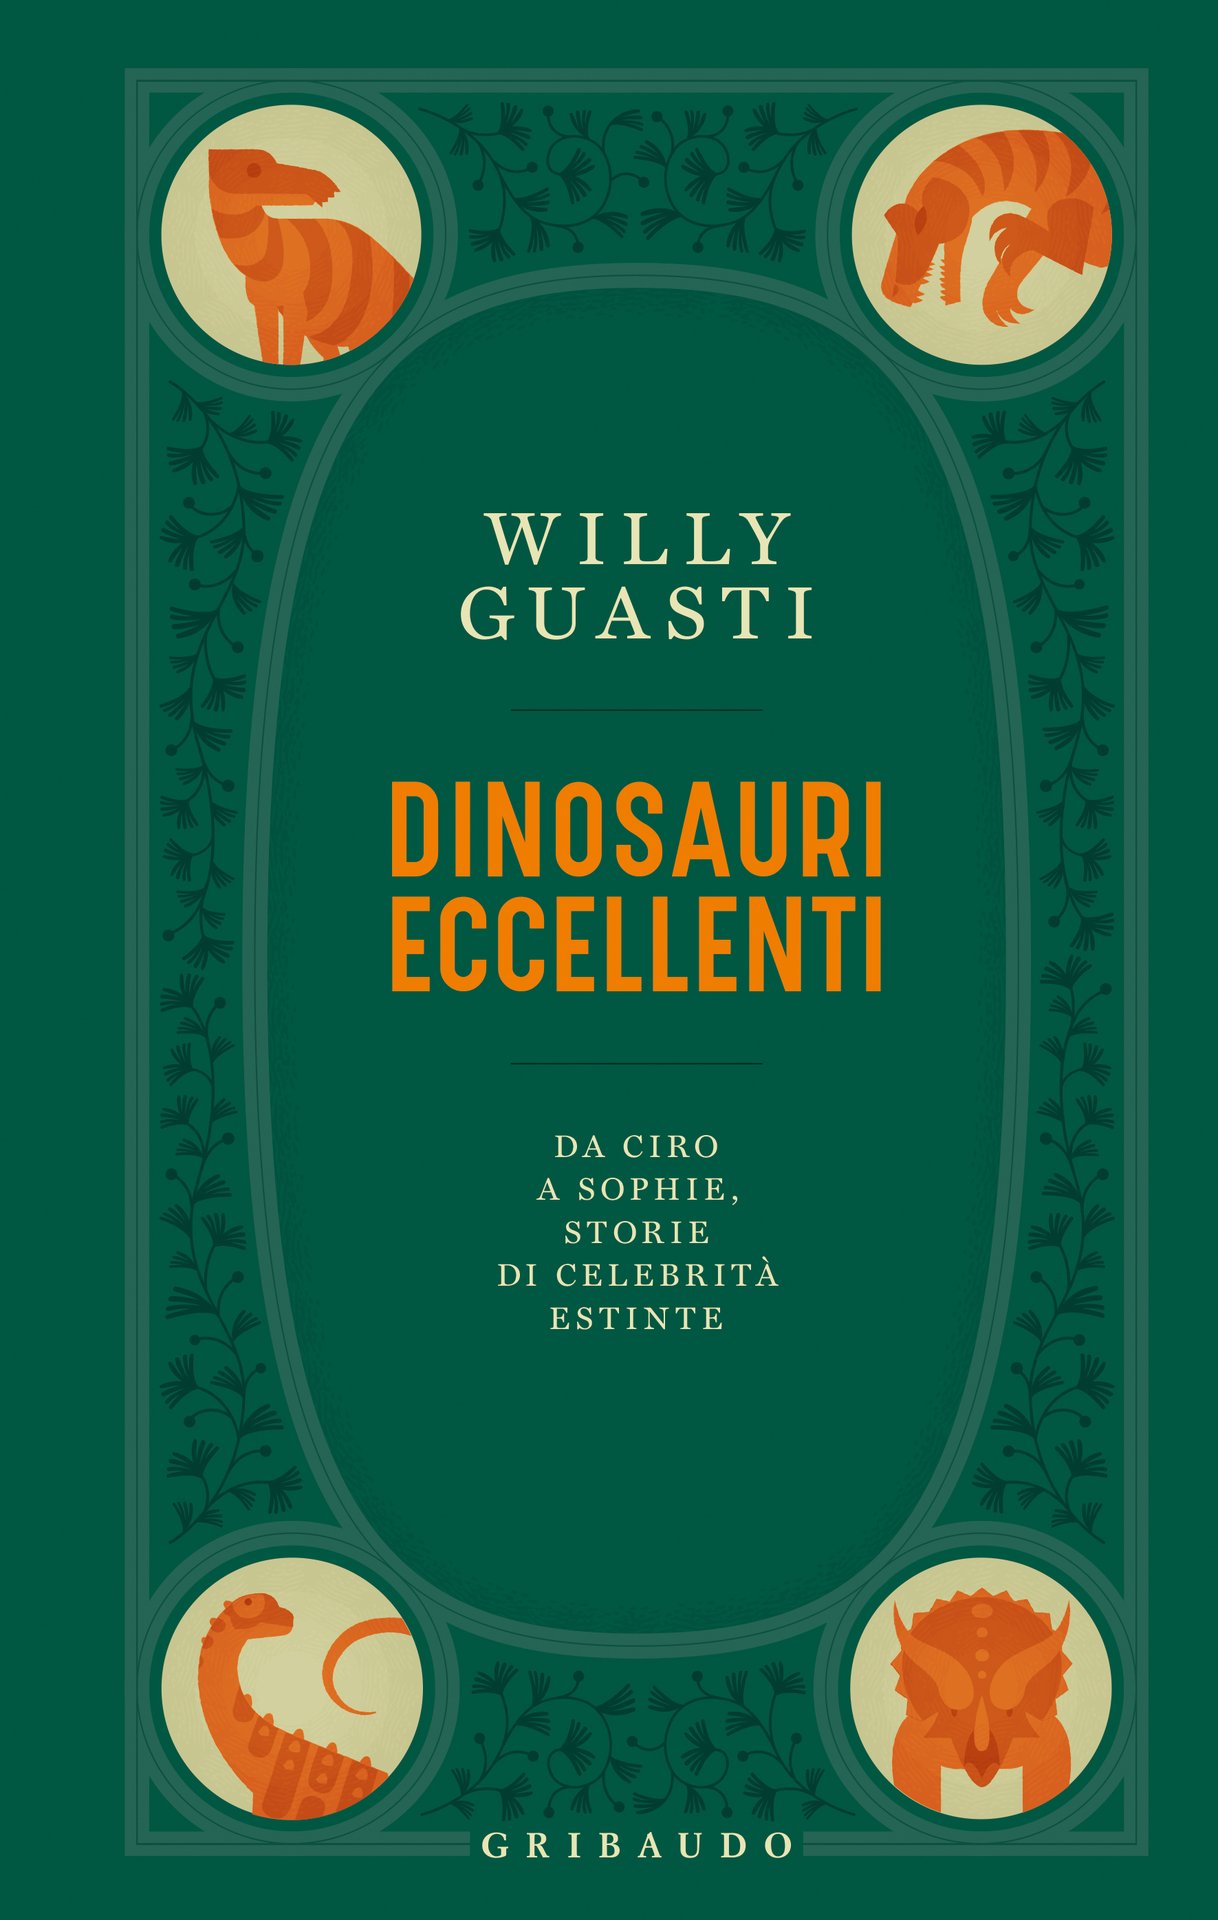 Willy Guasti presenta Dinosauri eccellenti a Prato